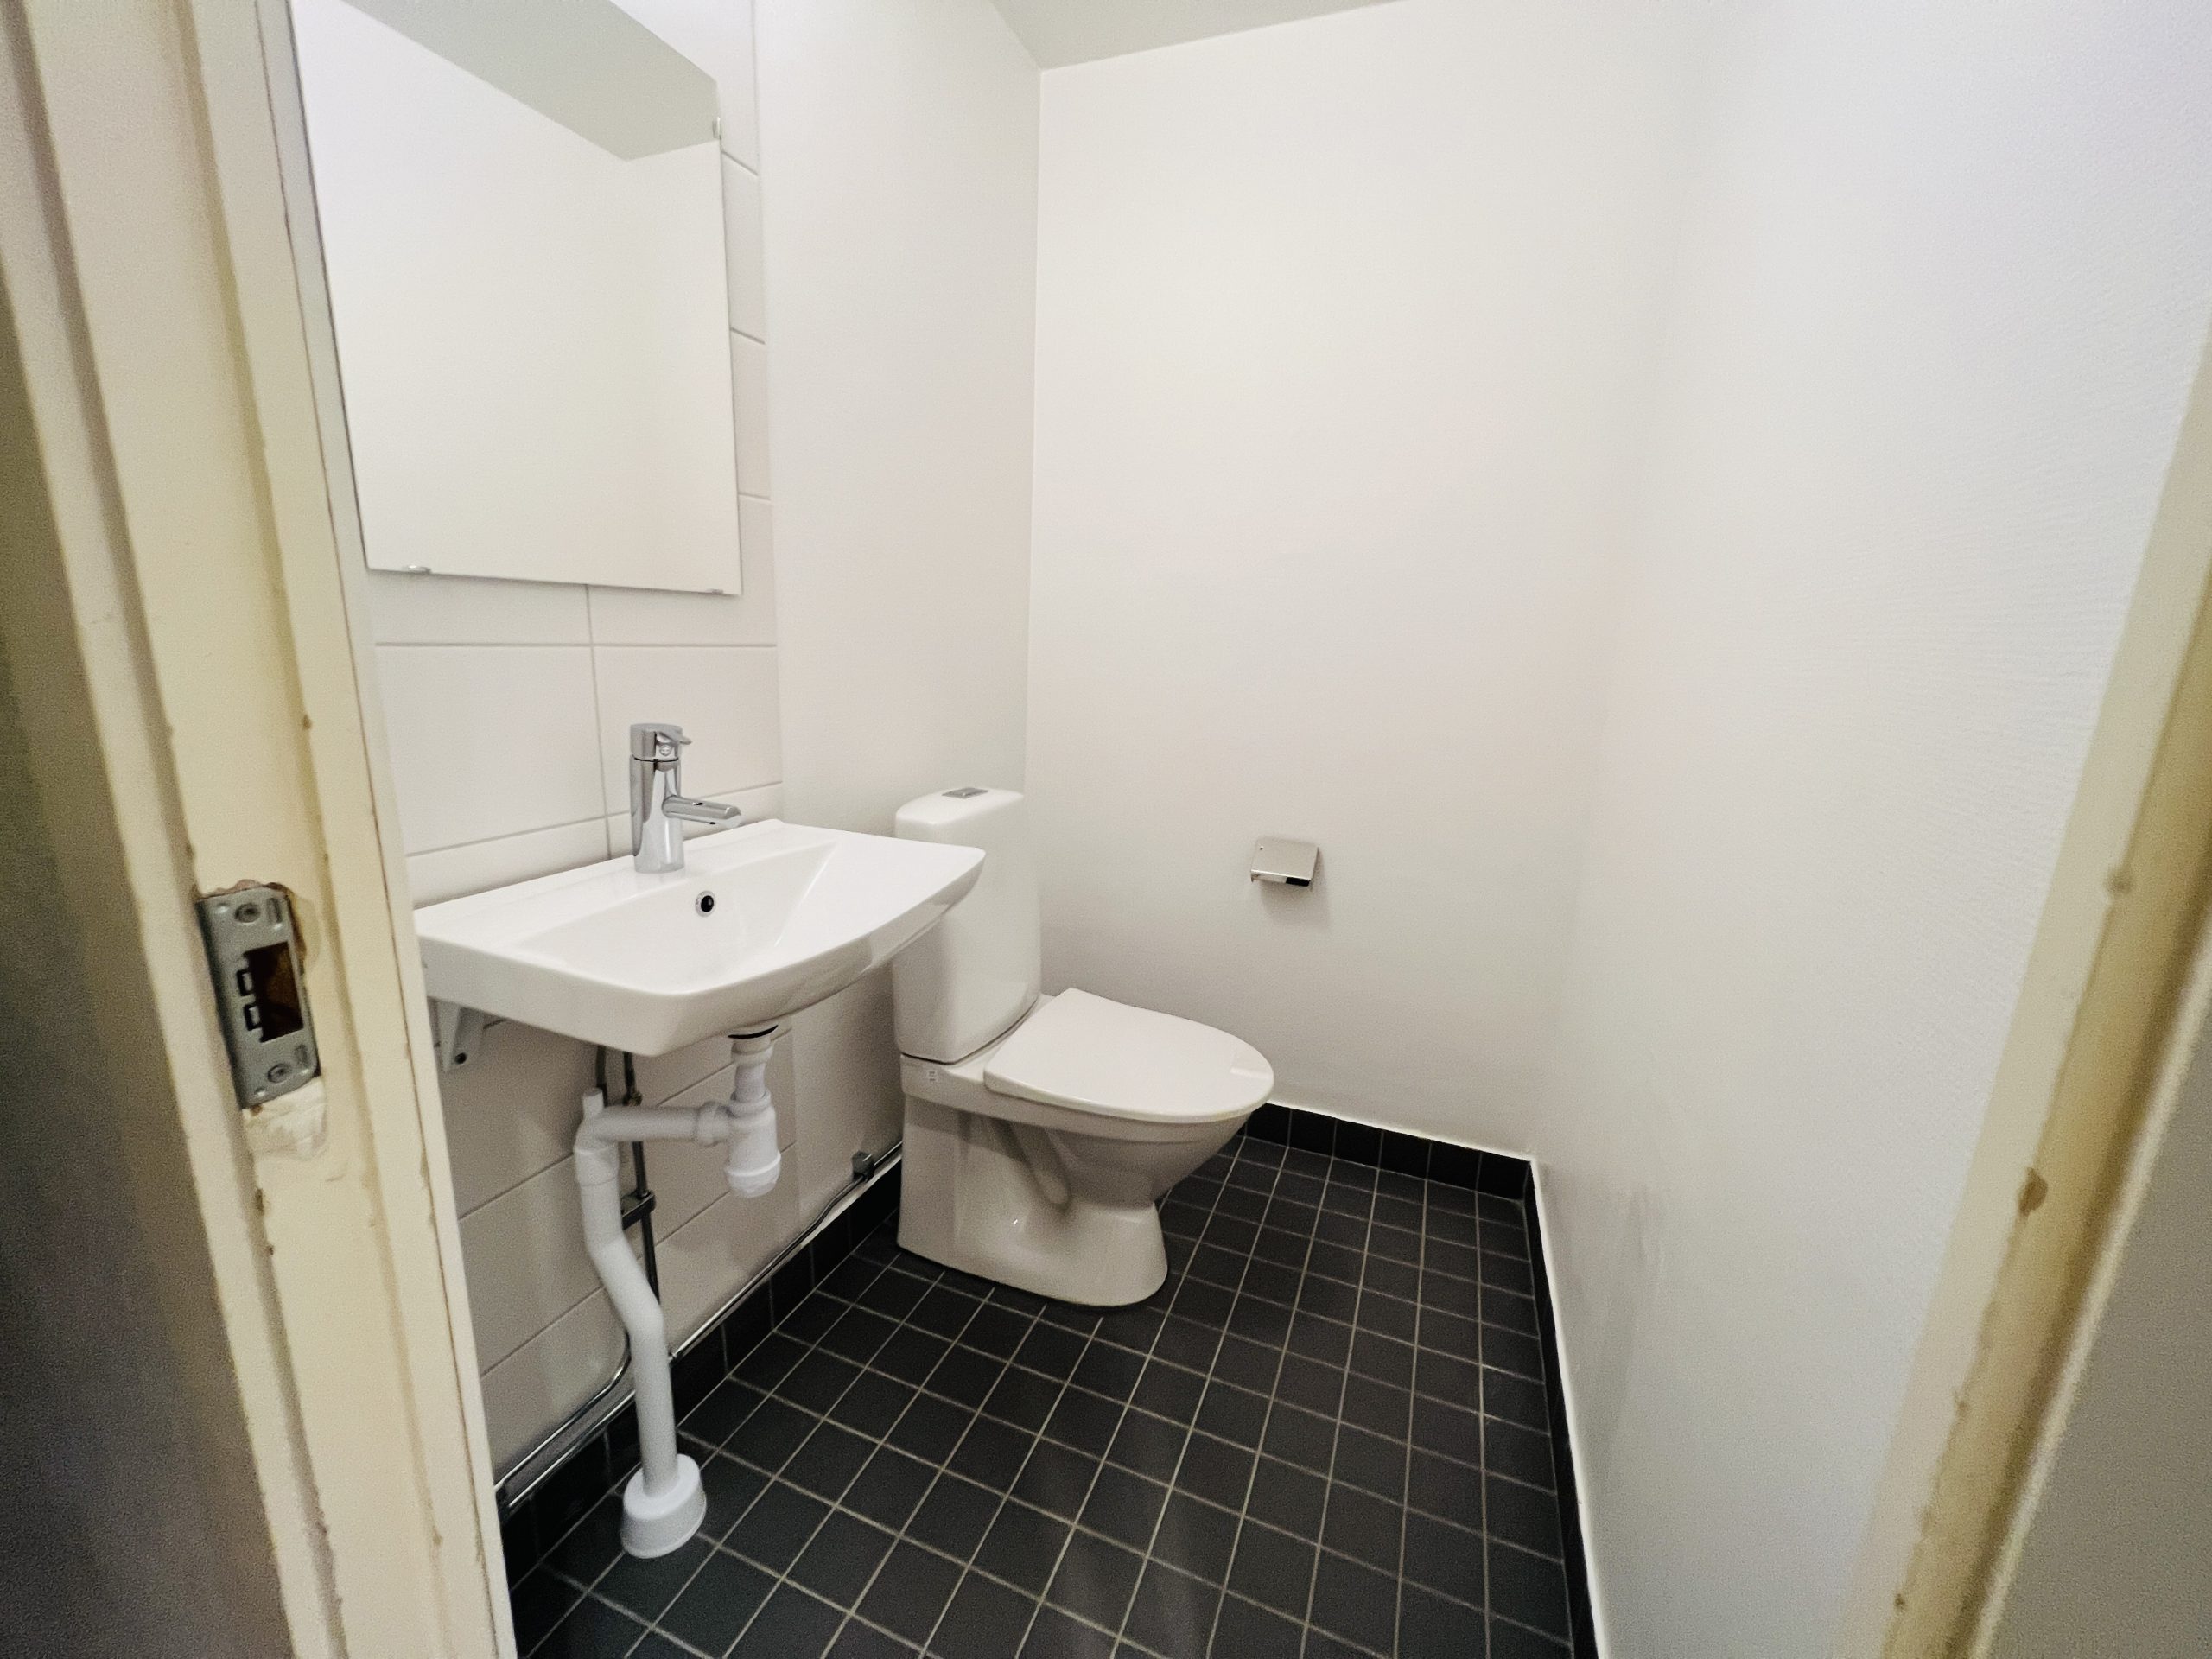 Asbestsanering vid rivning i badrummen, nya helkaklade badrum och badrumsinredning. Nytt gipsundertak i badrummet. Nya avloppsstammar samt vattenrör som gömts i vitlackerad plåtkassett i varje badrum. Nya breddade badrumsdörrar med massiva dörrblad. 